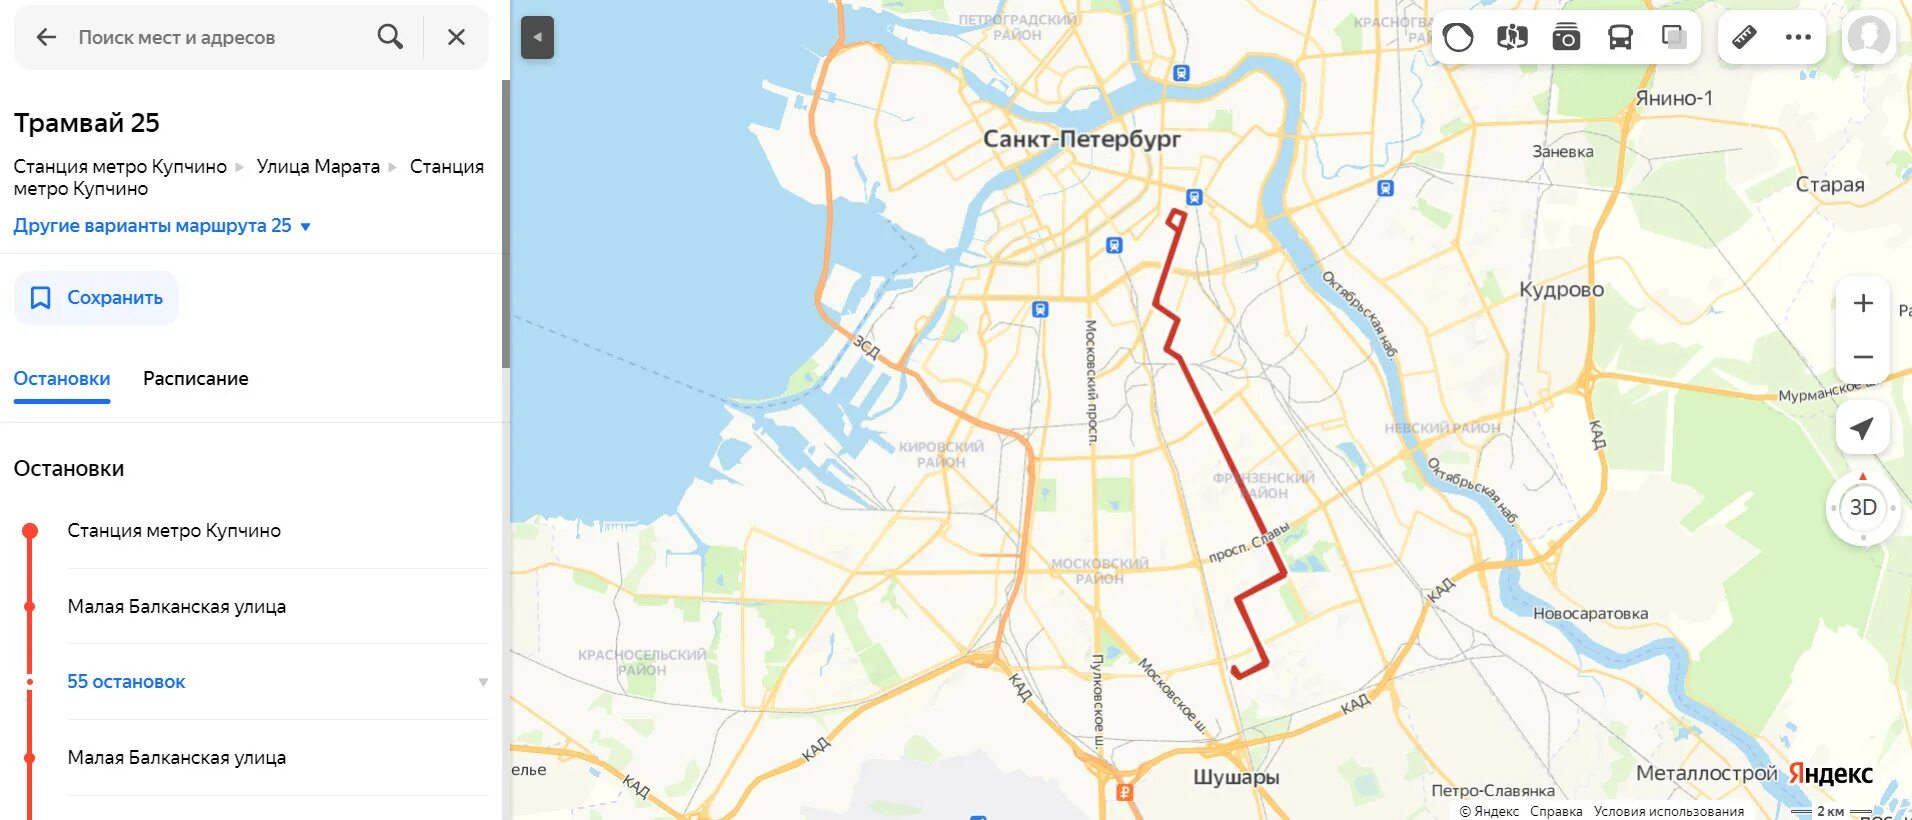 Трамвай 19 маршрут остановки. Трамвай 7 СПБ маршрут. Маршруты трамваев СПБ. Маршрут трамвая 7 Санкт-Петербург на карте. Карта трамвайных маршрутов Санкт-Петербурга.